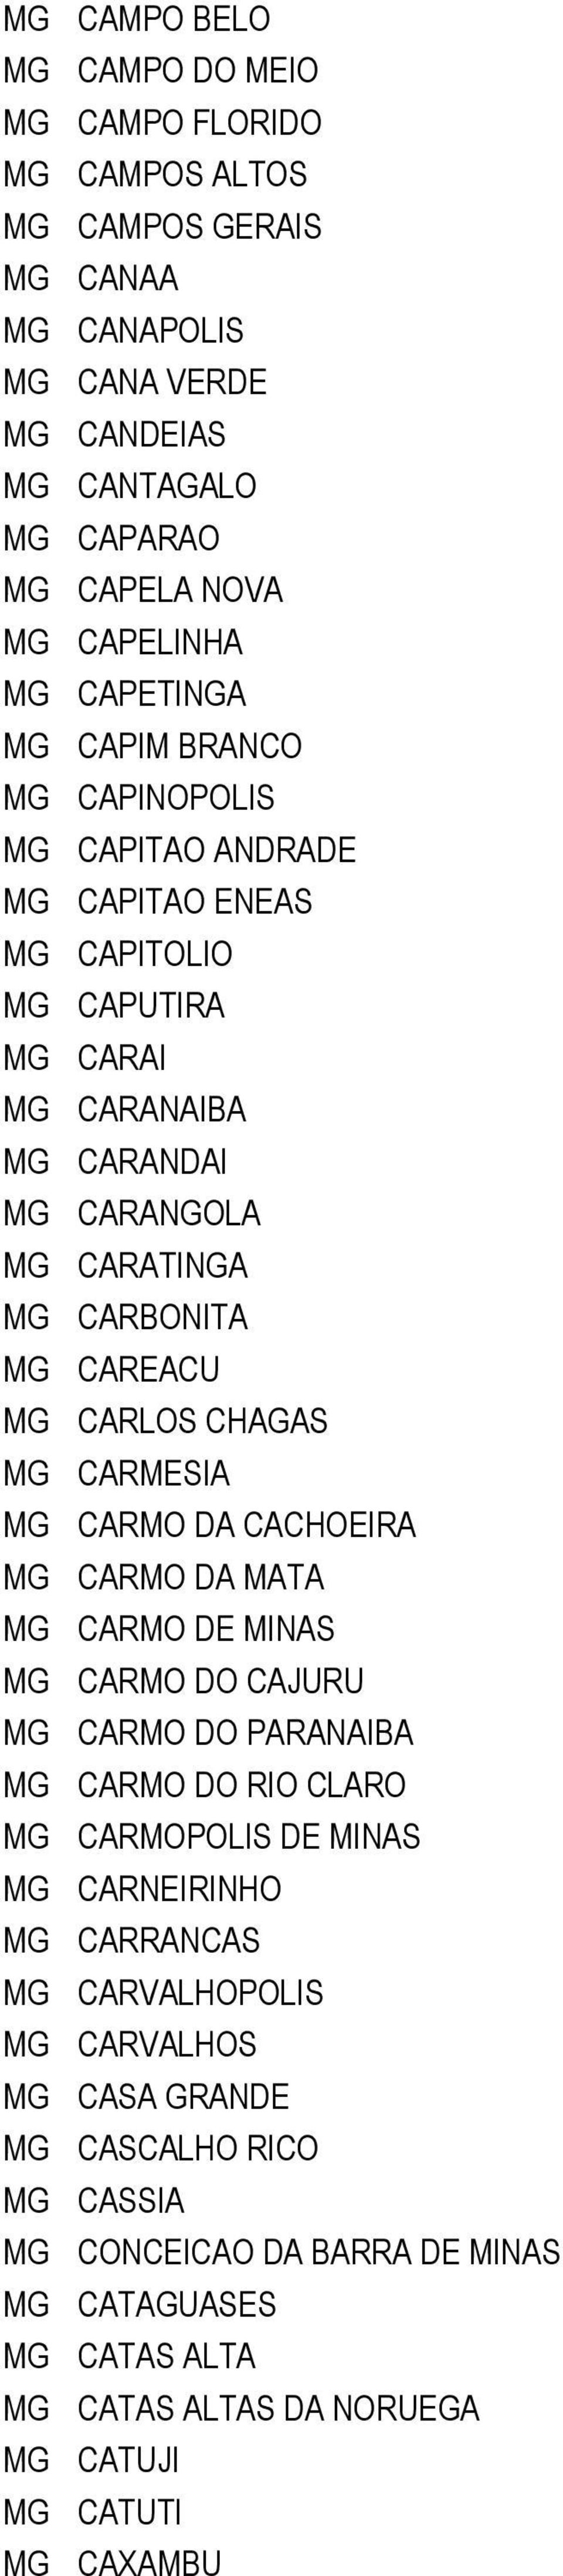 CARLOS CHAGAS MG CARMESIA MG CARMO DA CACHOEIRA MG CARMO DA TA MG CARMO DE MINAS MG CARMO DO CAJURU MG CARMO DO RANAI MG CARMO DO RIO CLA MG CARMOPOLIS DE MINAS MG CARNEIRINHO MG